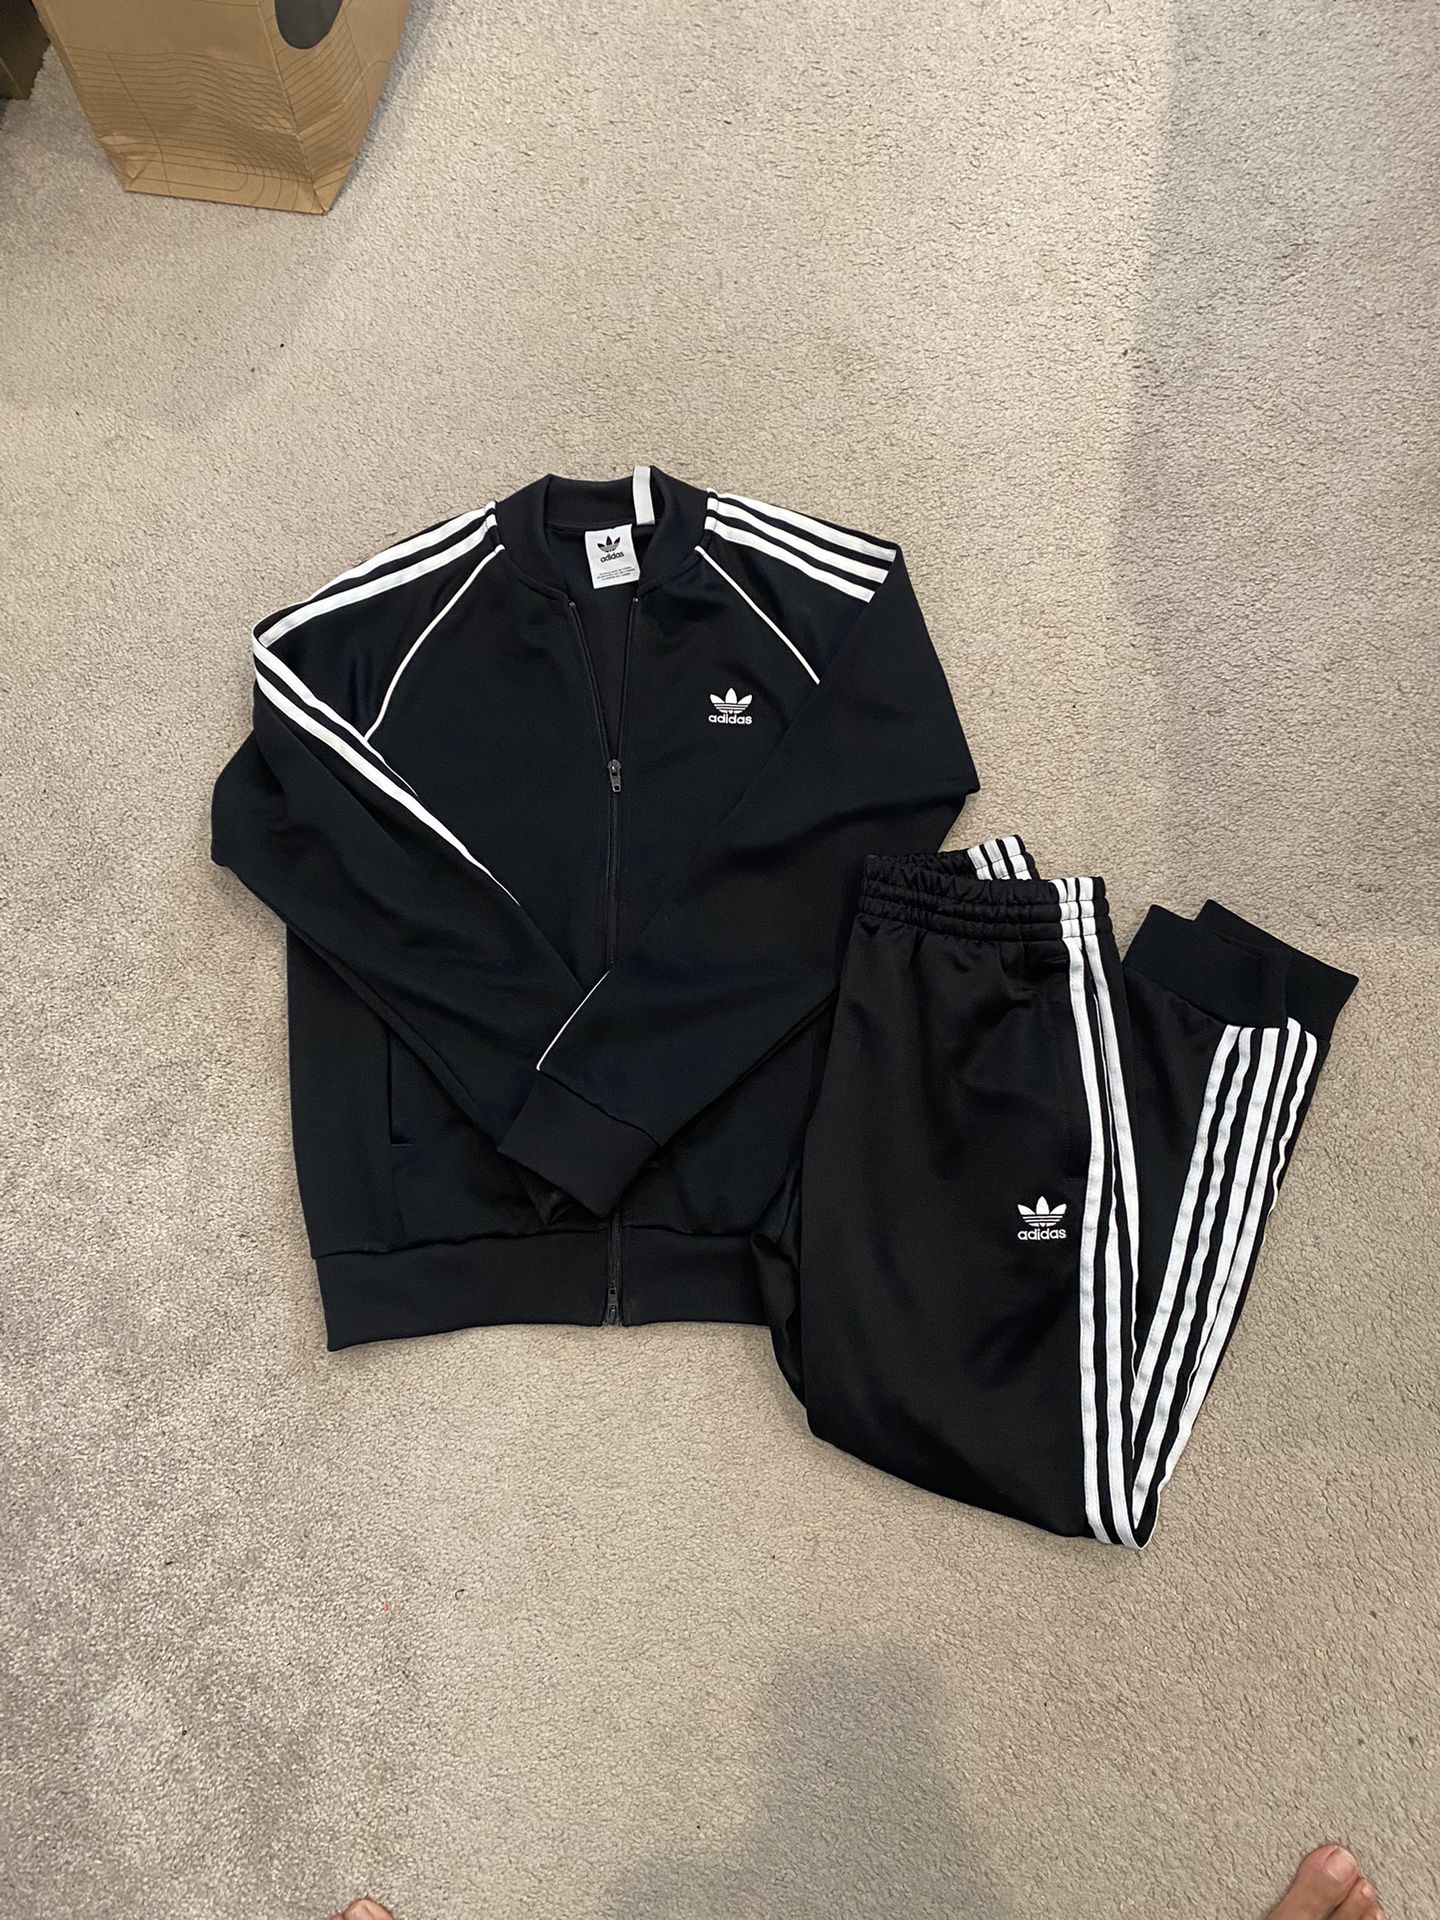 Men’s Adidas Classic Black Track Suit Set, Size M